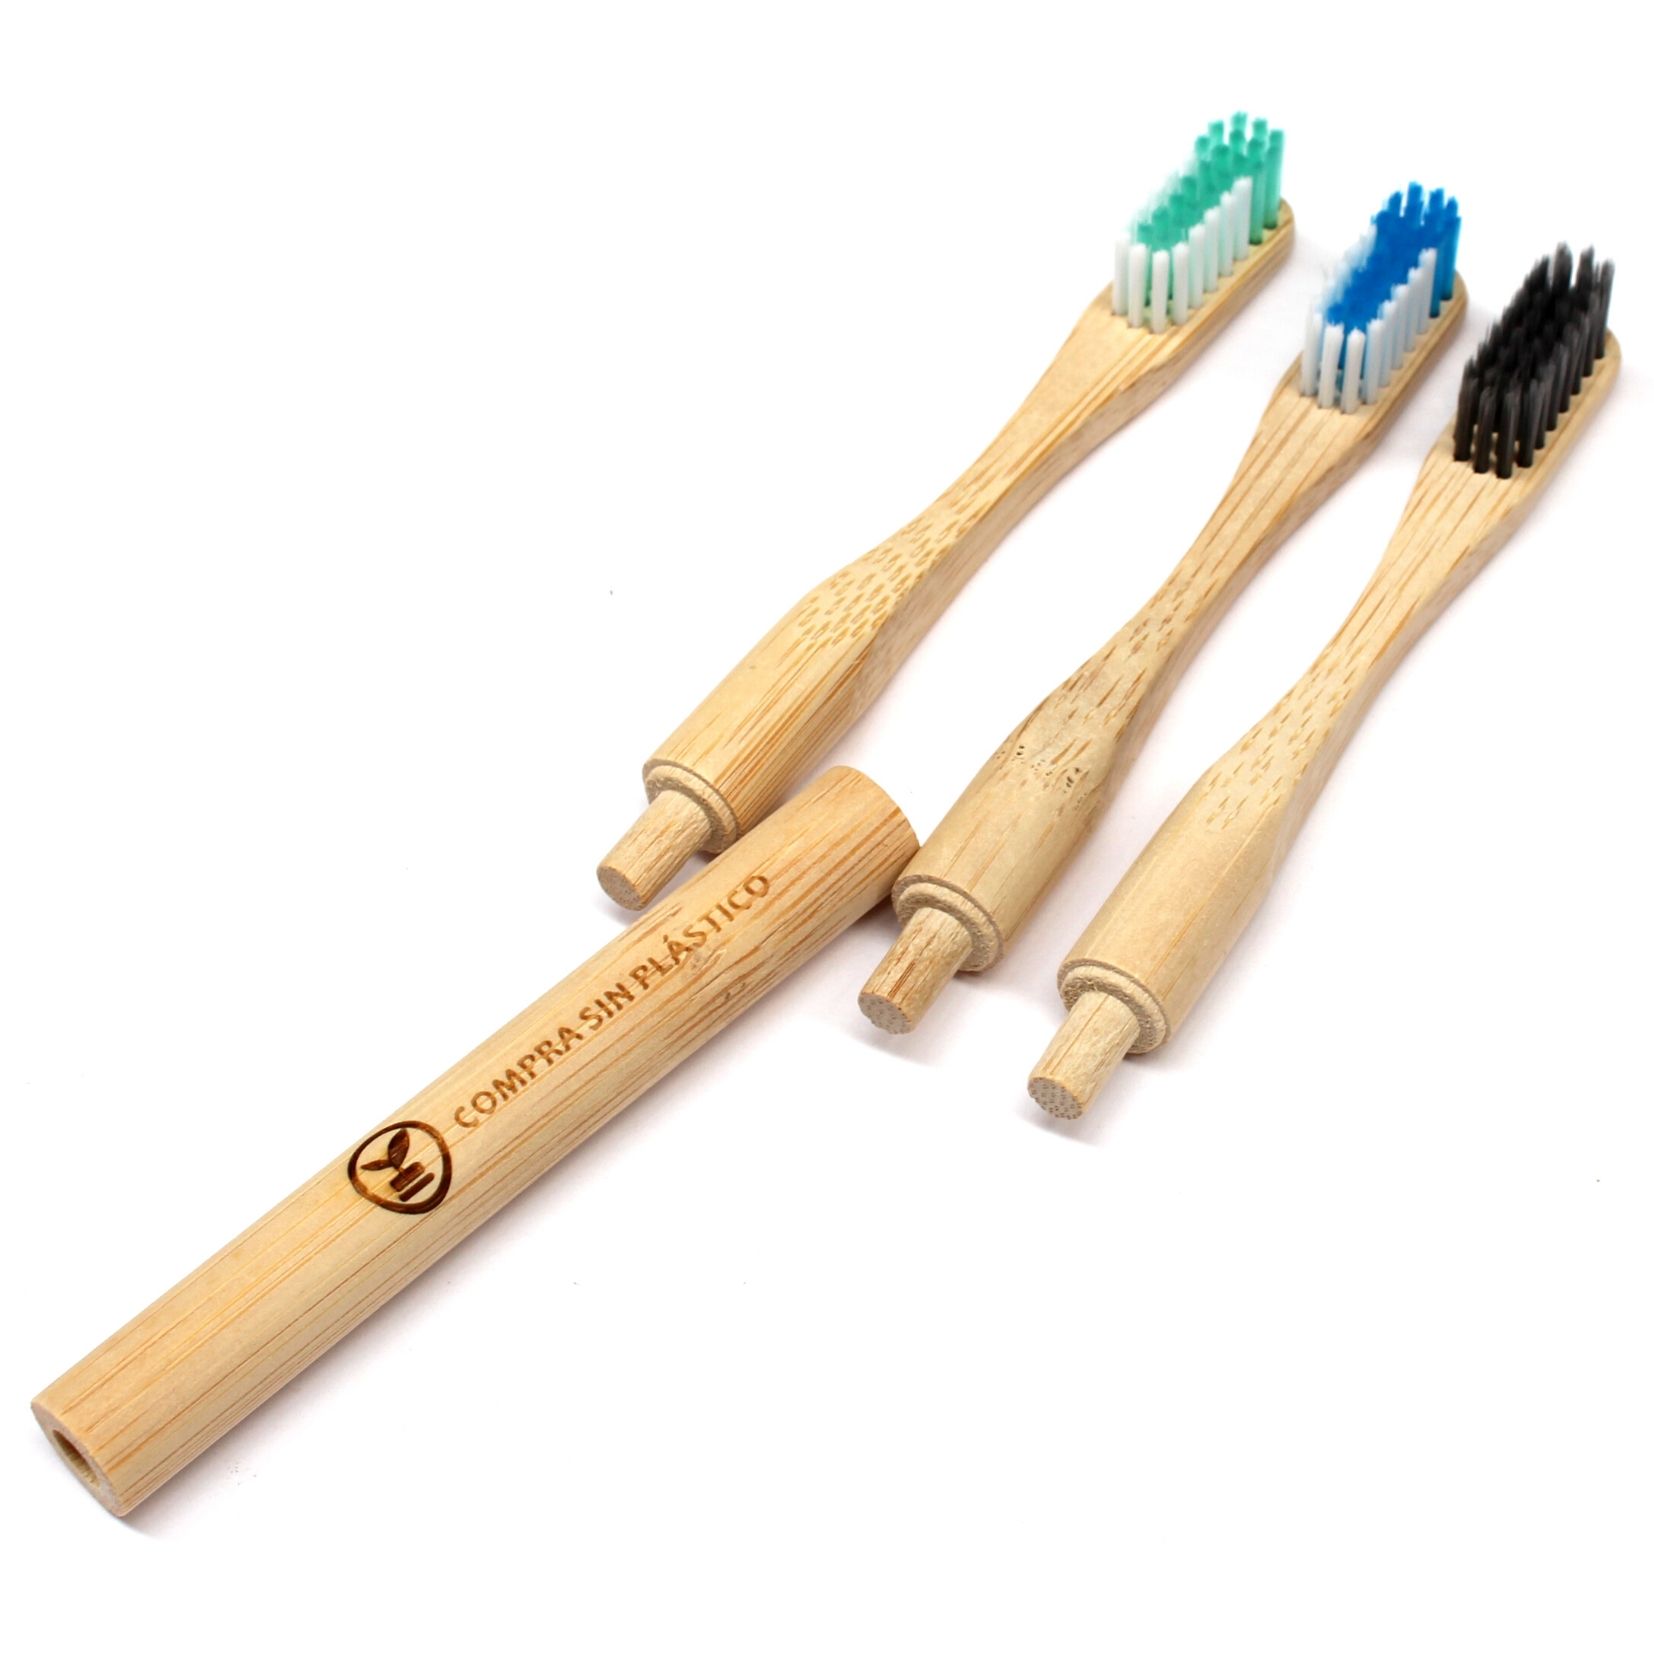 numerado individualmente arcoíris con cerdas de nailon sin BPA ecológico Cepillo de dientes de bambú natural Kobwa biodegradable paquete de 4